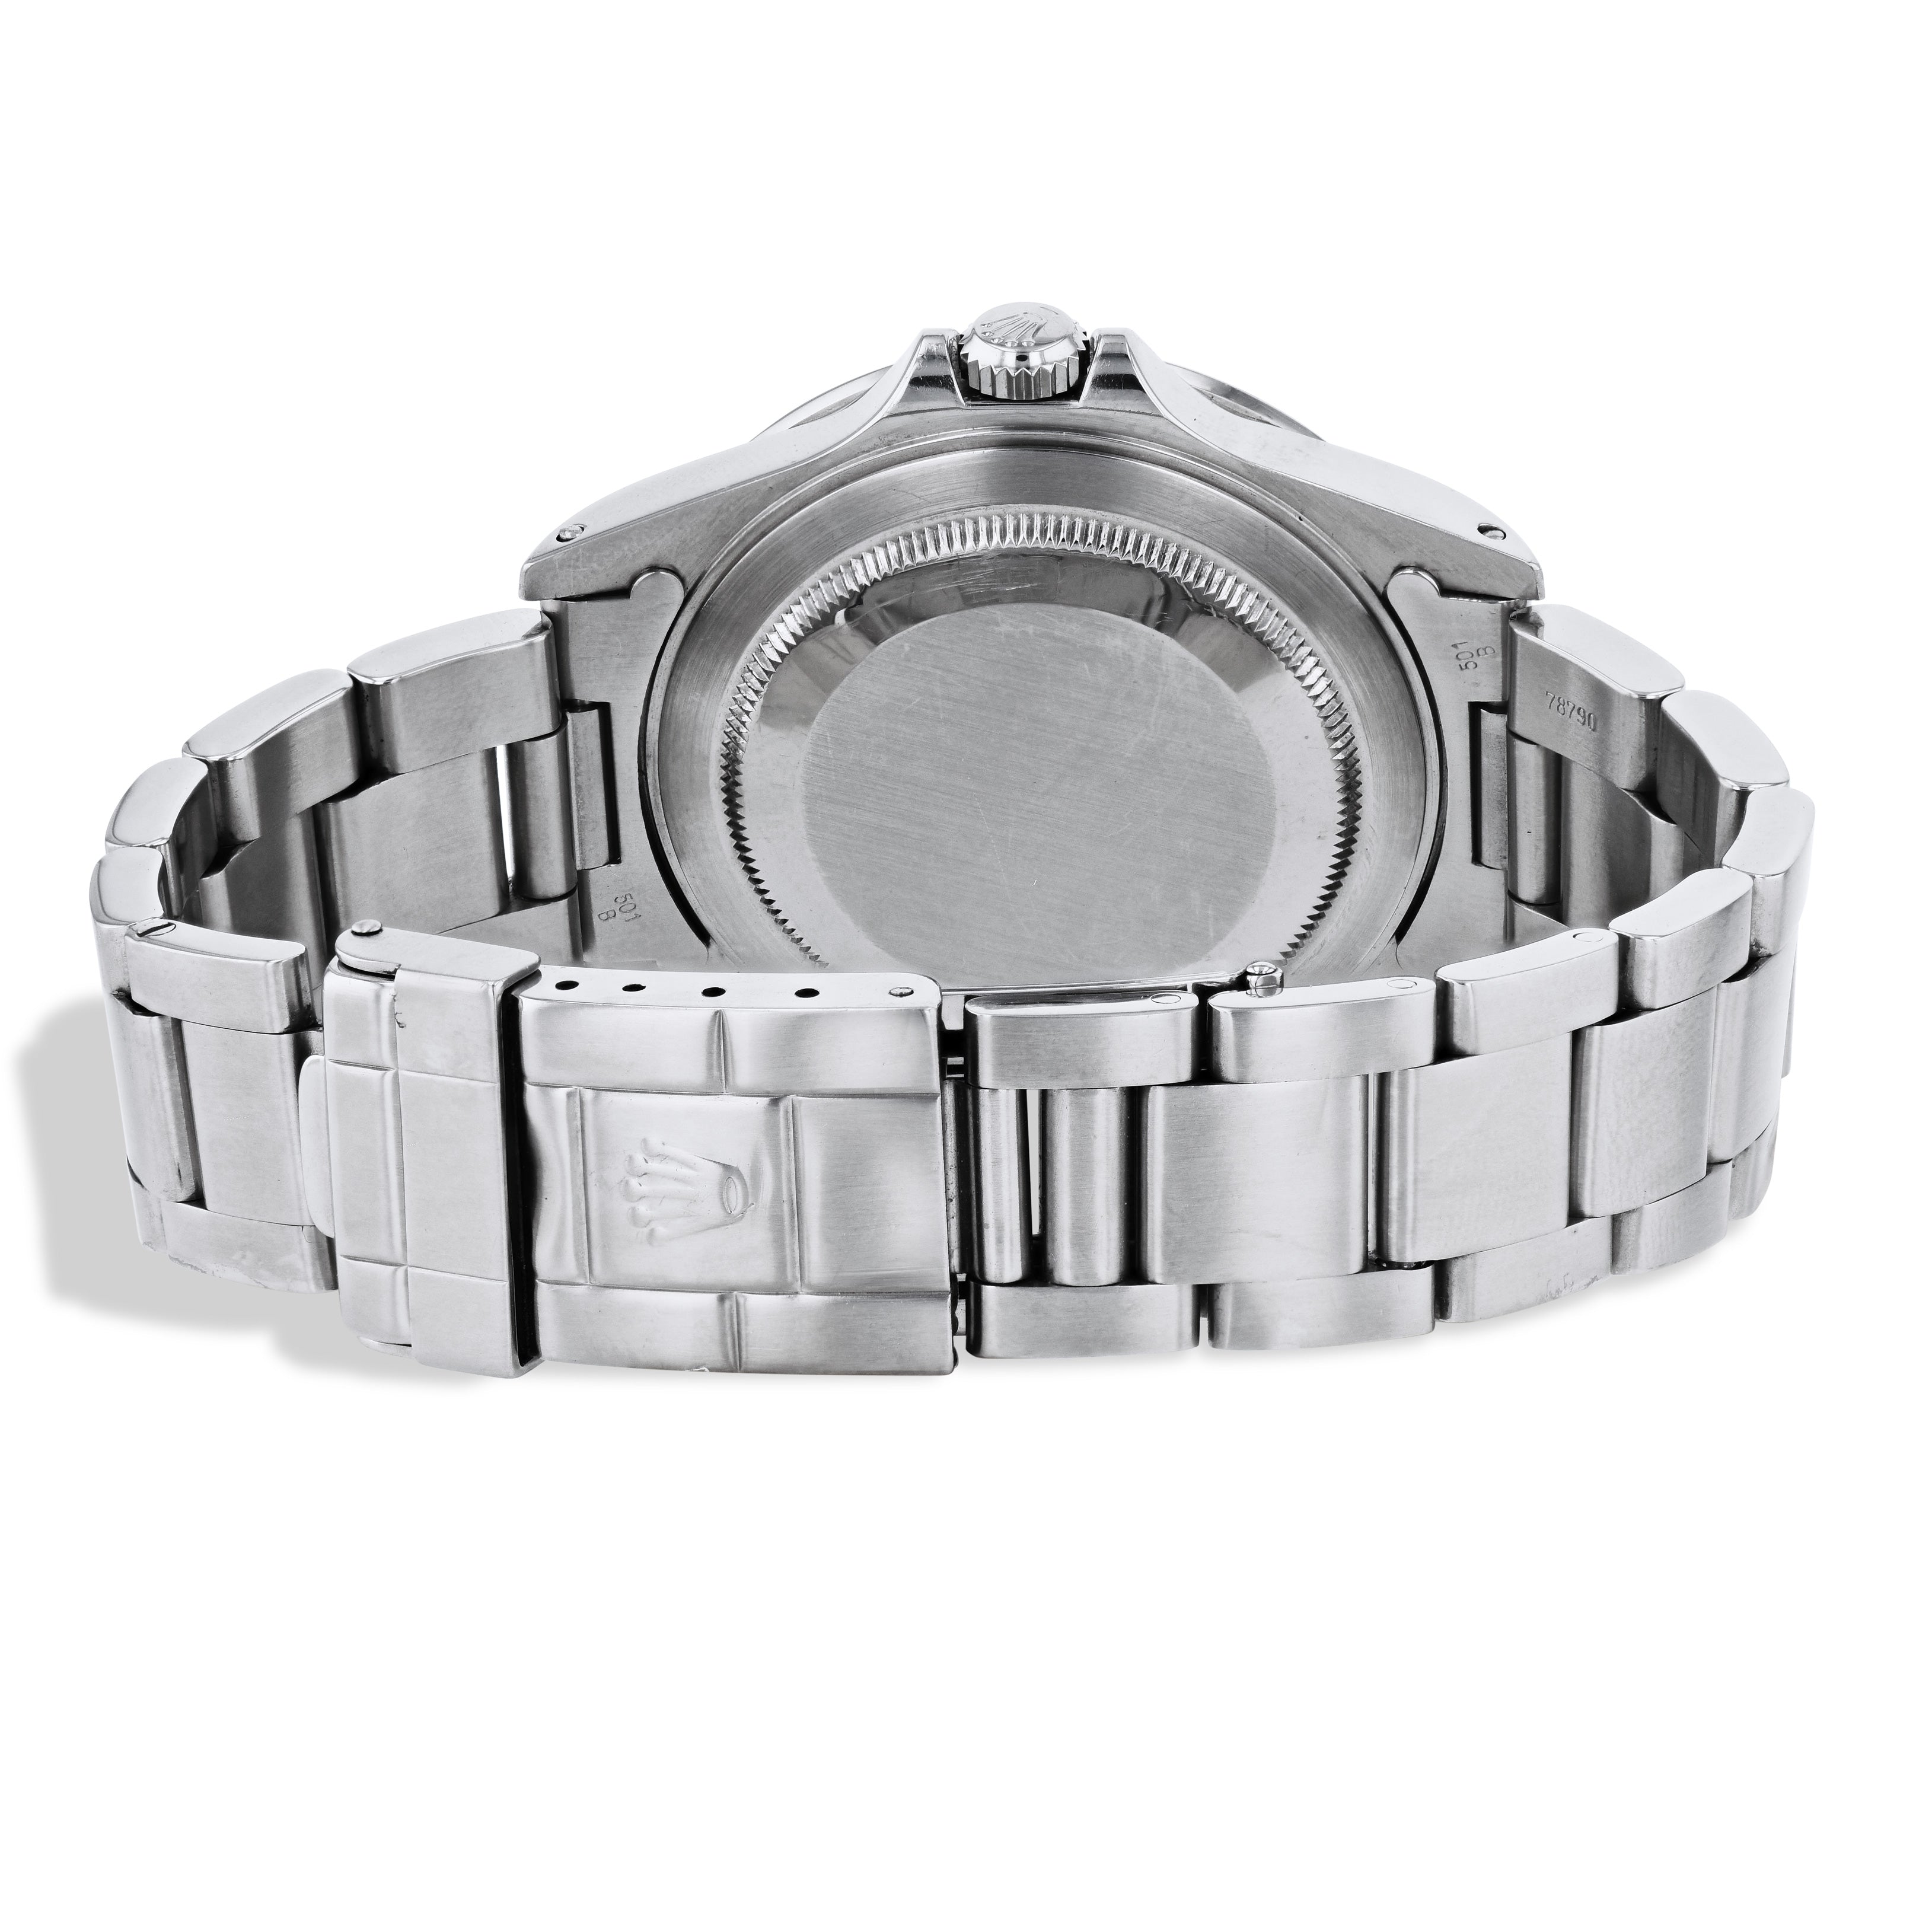 Rolex Explorer II 40mm Stainless Steel Estate Watch - 16570 Watches Estate & Vintage